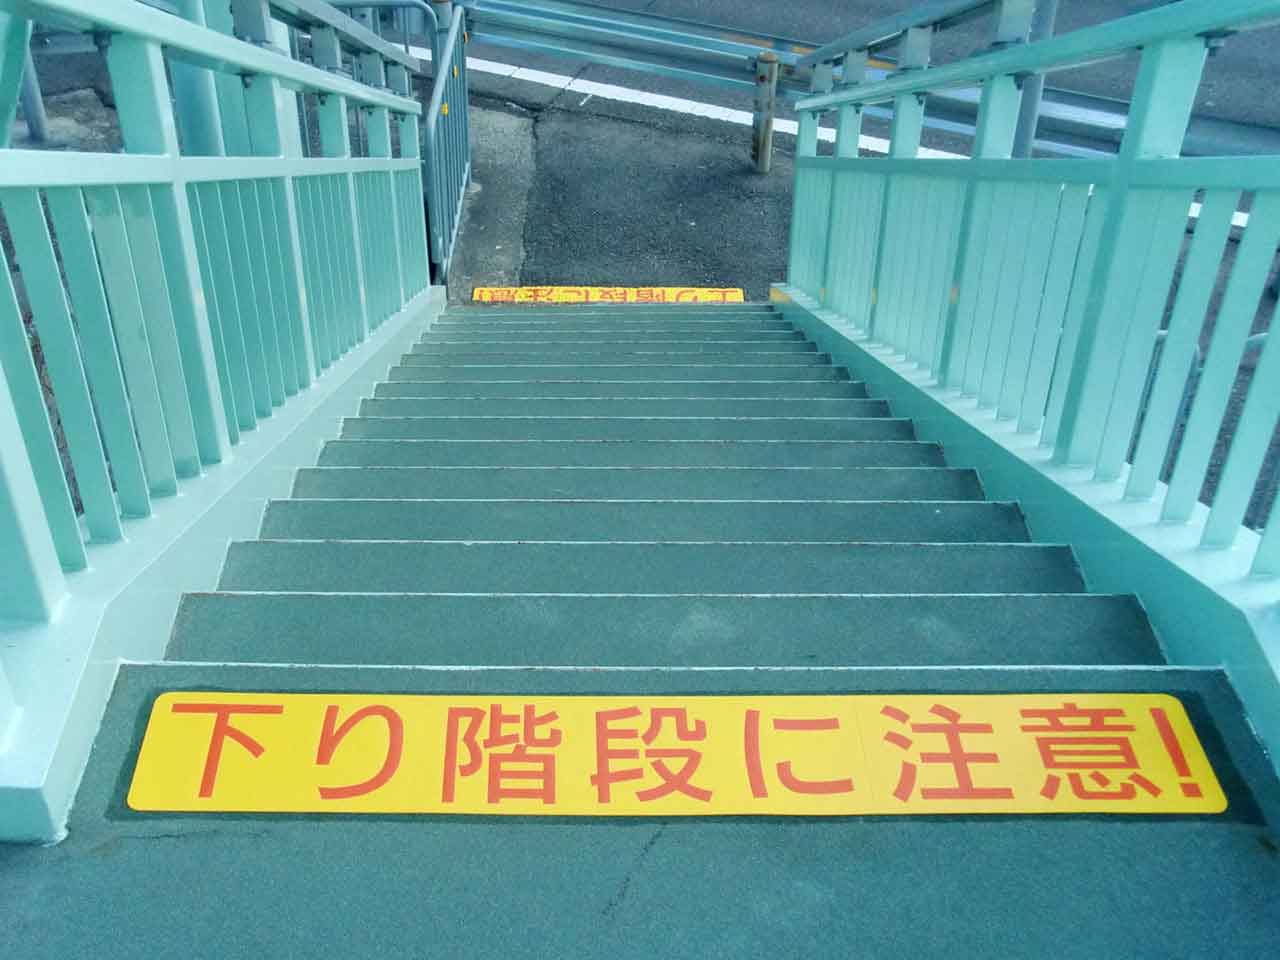 文字【上り階段に注意・下り階段に注意】